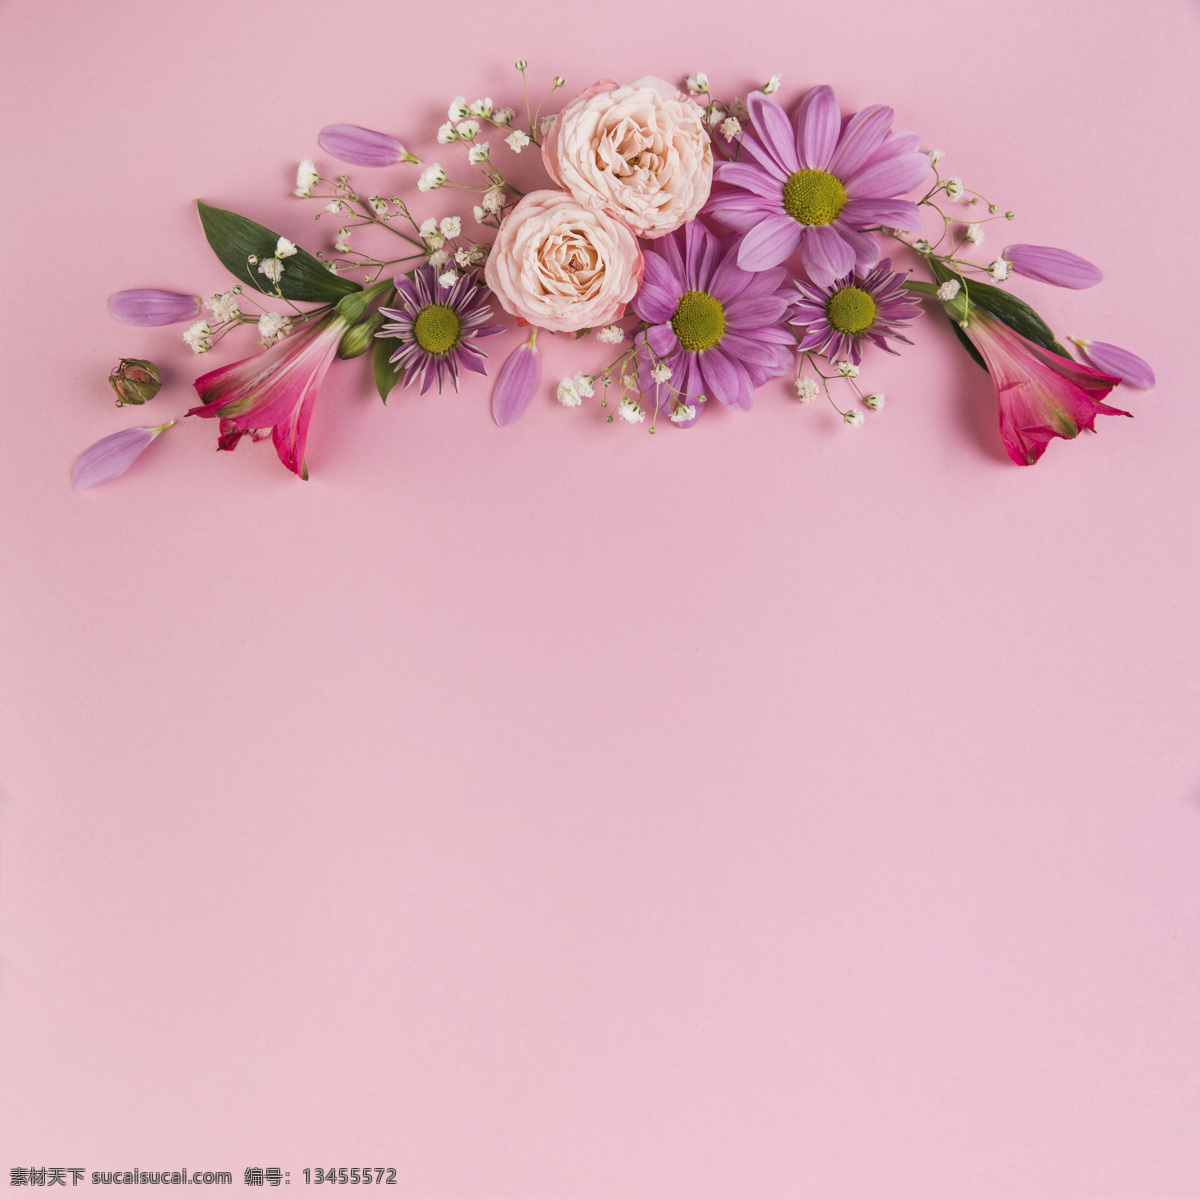 粉色 背景 花卉 装饰 花 花的 叶子 花卉背景 自然 粉红 美女 玫瑰 背景图案 花型 粉红背景 优雅的 自然的 装饰性的 婴儿背景 背景花 导播室 优雅的背景 简单的 新鲜的 背景粉红 植物学的 开花 粉红花 美丽的 植物区系 季节 特殊的 选择 花瓣 气候 呼吸 洋甘菊 婴儿 春天 底纹边框 背景底纹